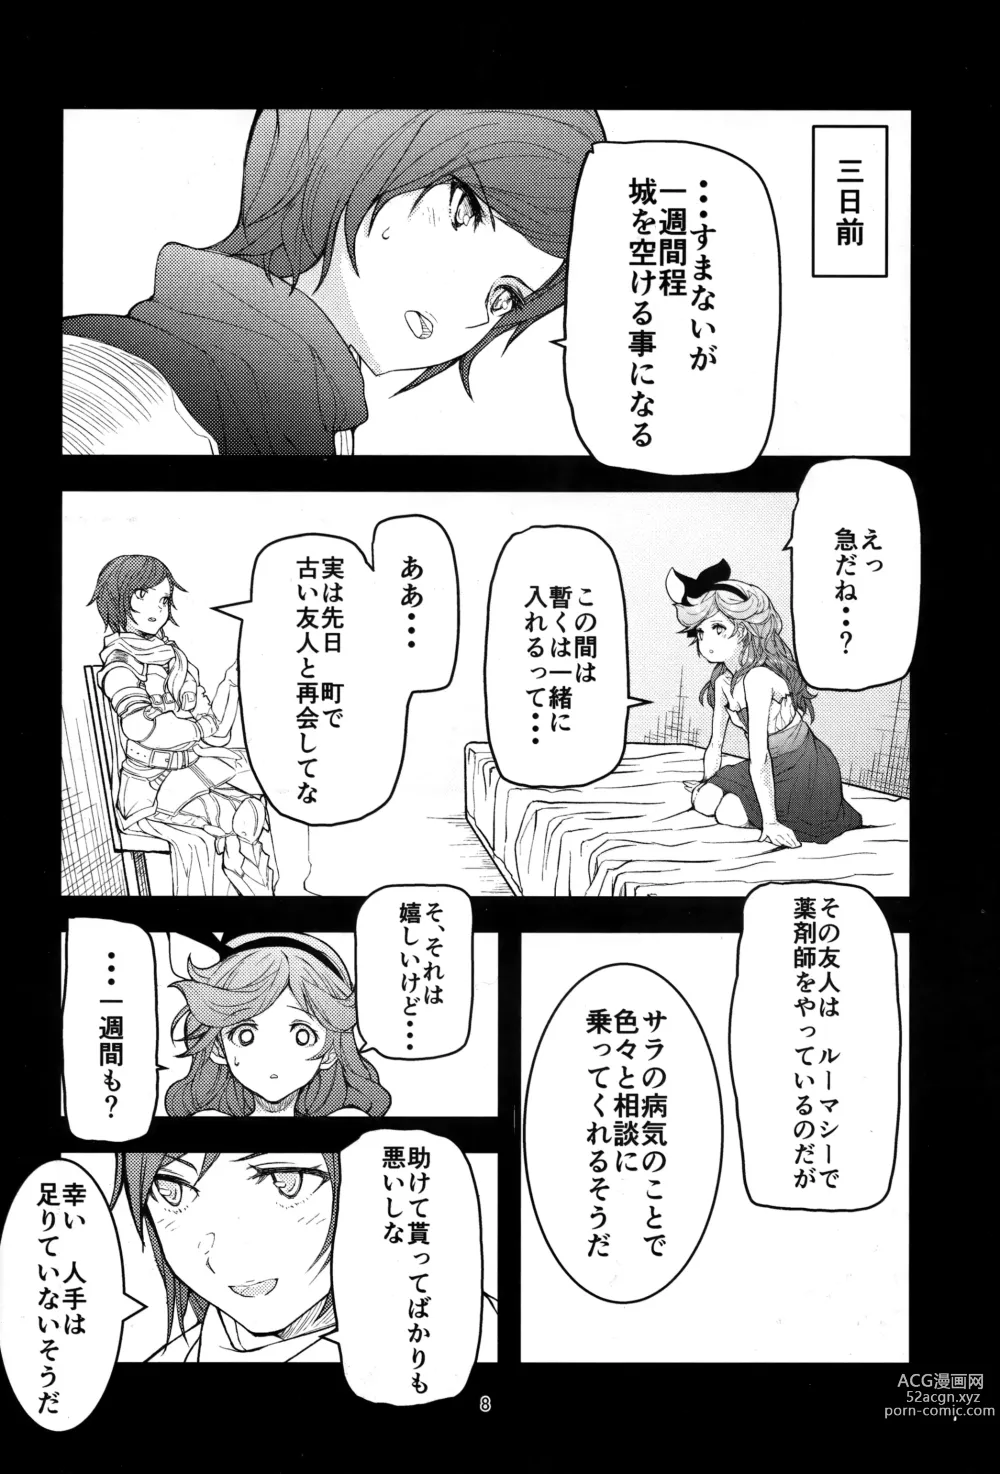 Page 7 of doujinshi Kowaku no Miko